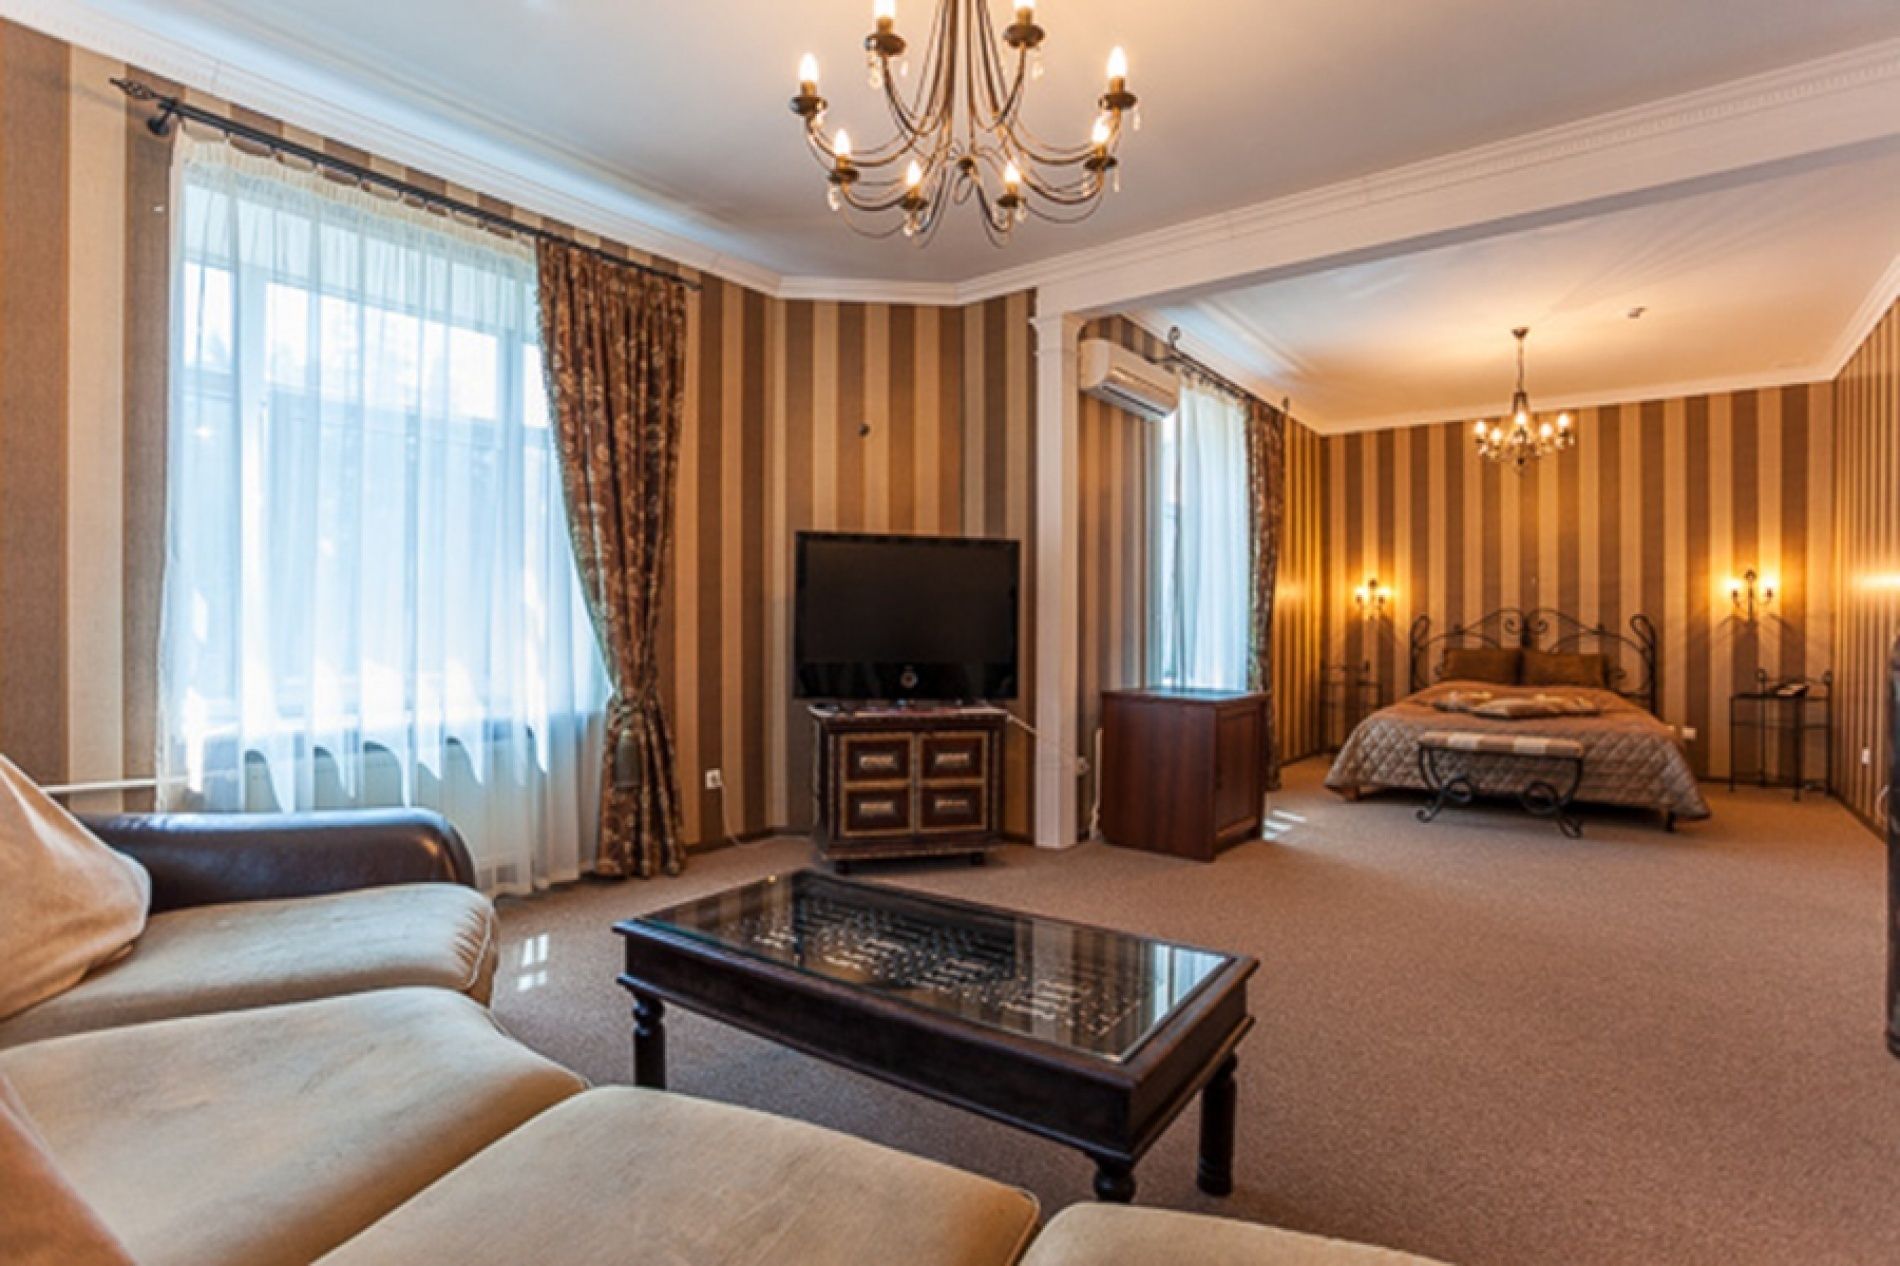  СПА-отель «Бекасово» Московская область «Гостиный дом» 3-местный 2-комнатный «Люкс» Double «Анкара», фото 2